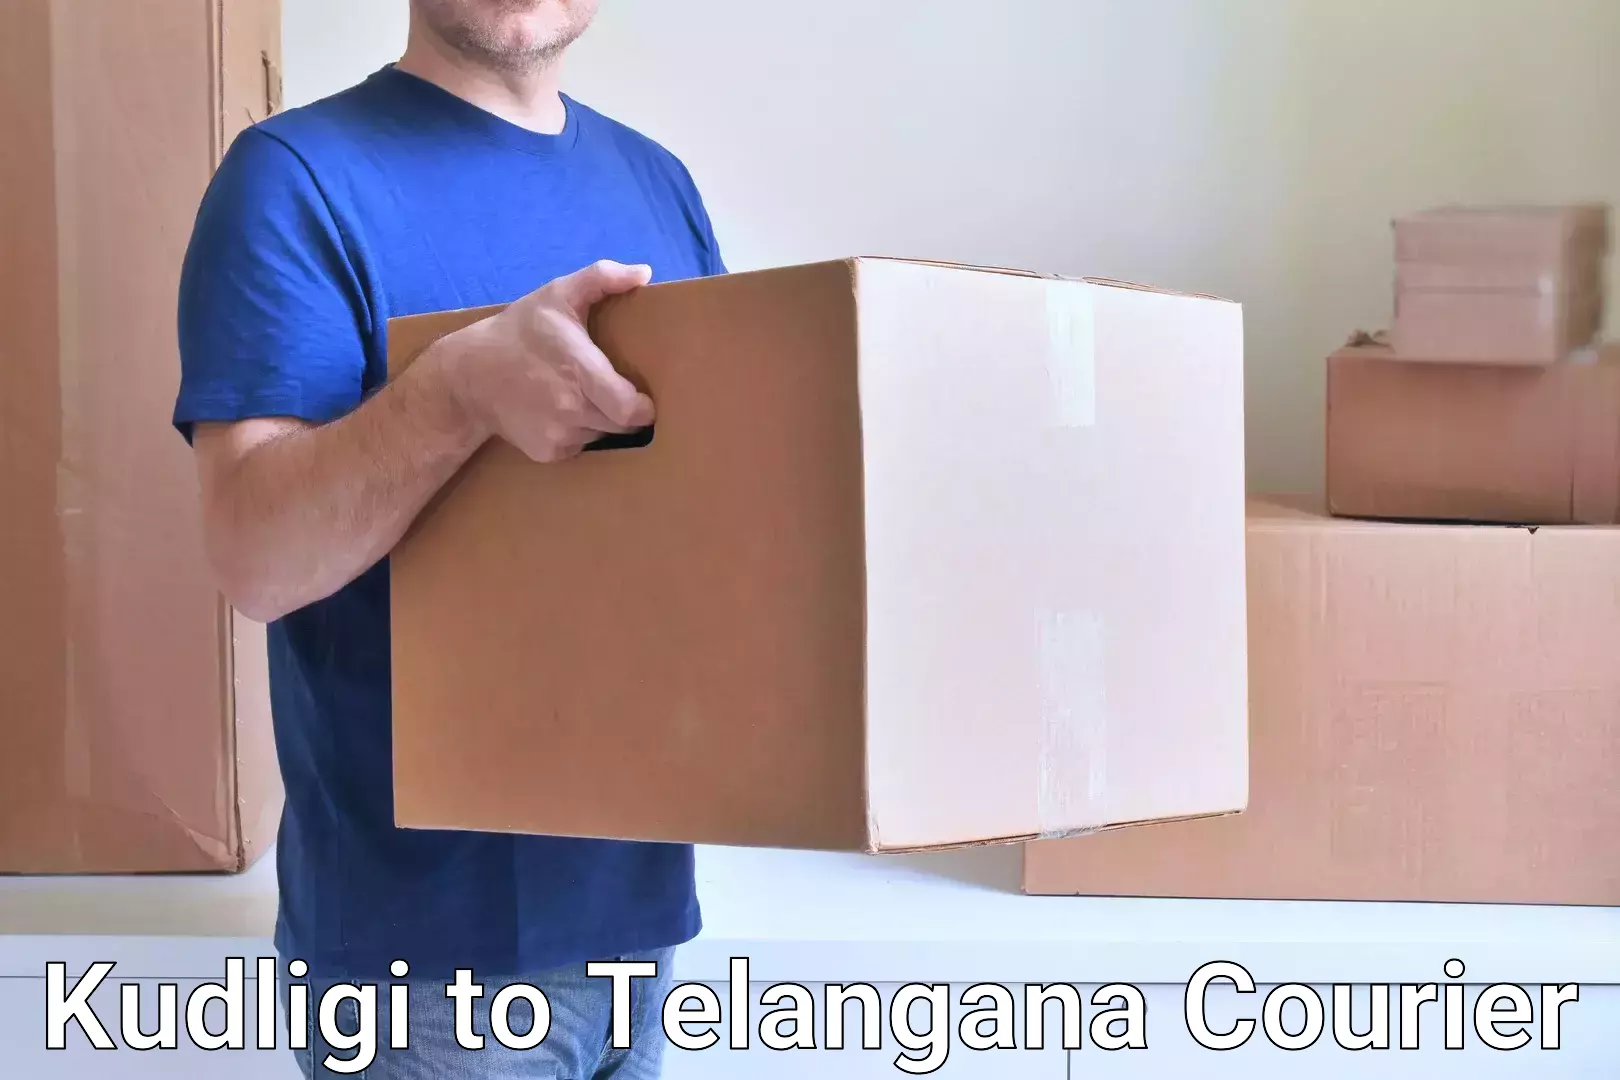 Parcel handling and care Kudligi to Telangana